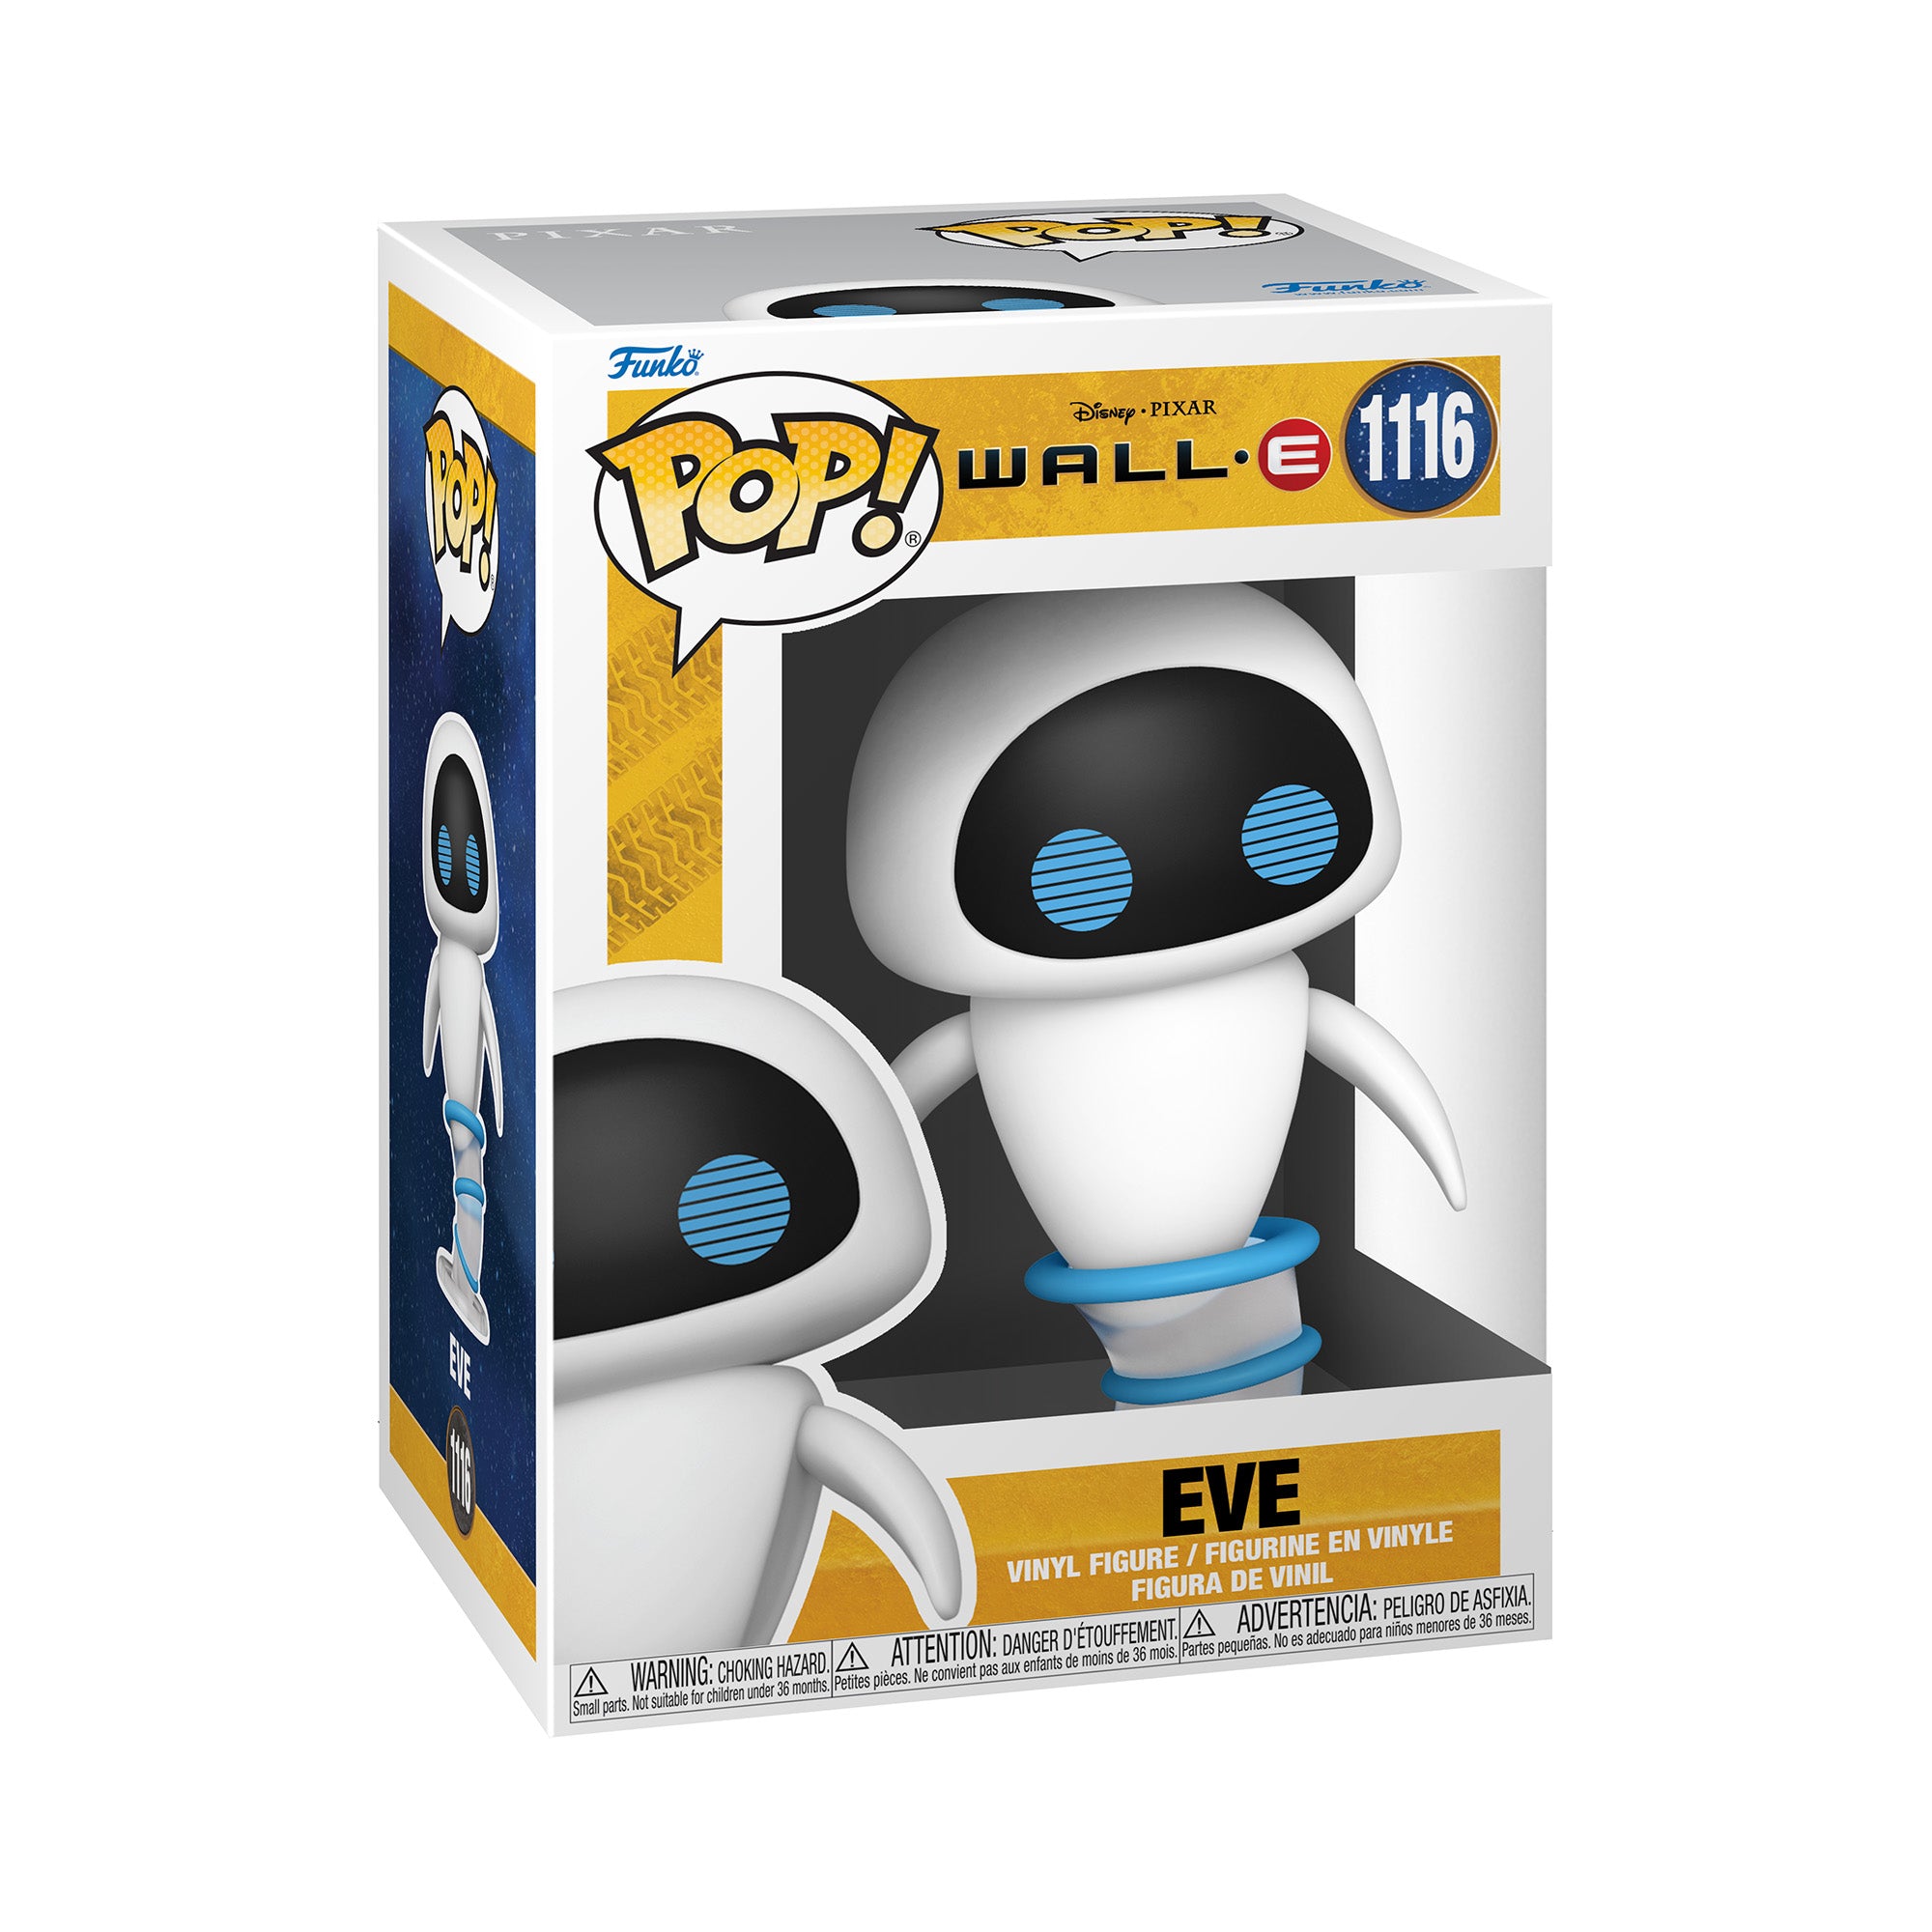 Disney Wall-E: Eve Flying POP! Vinyl Figure by Funko